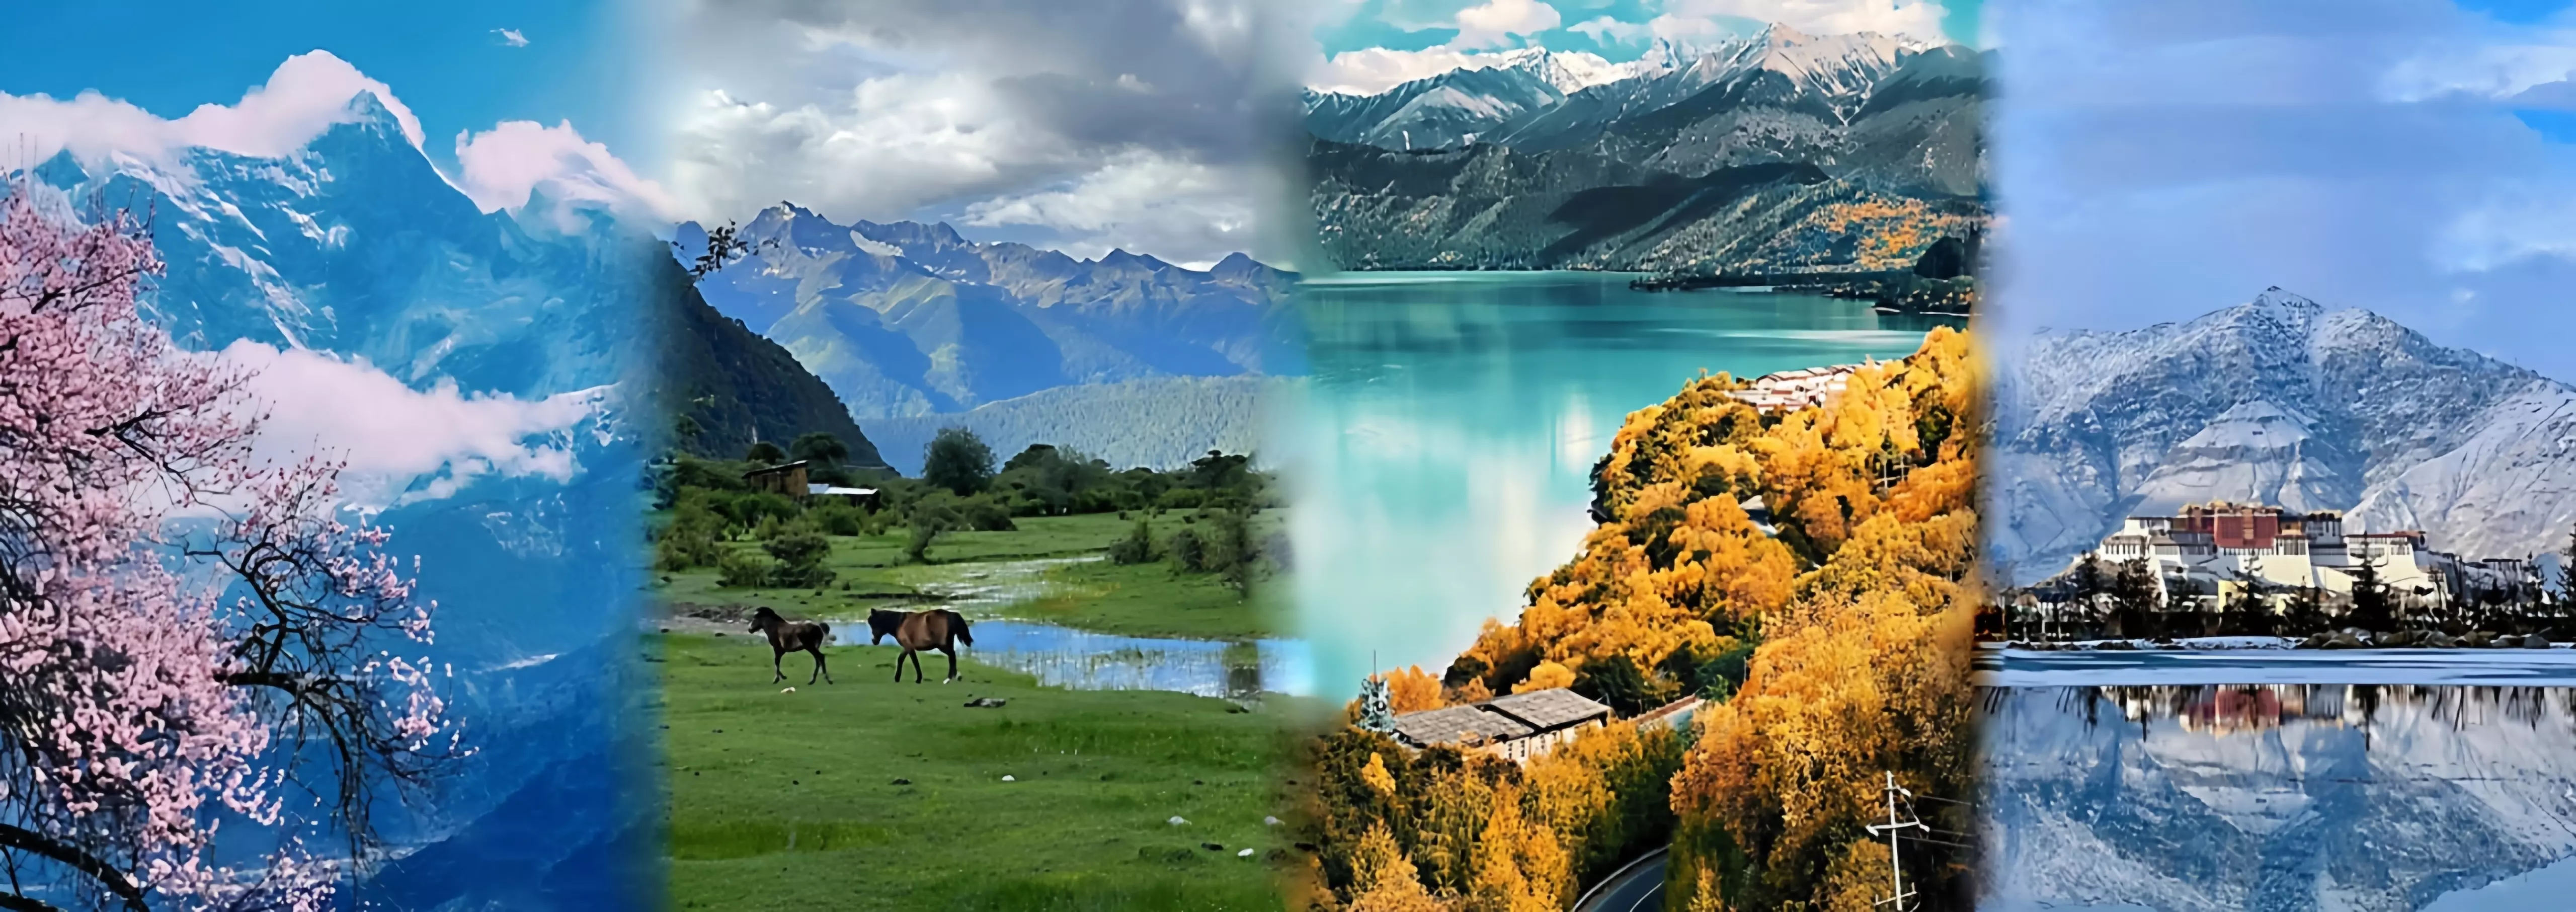 4 seasons of Tibet